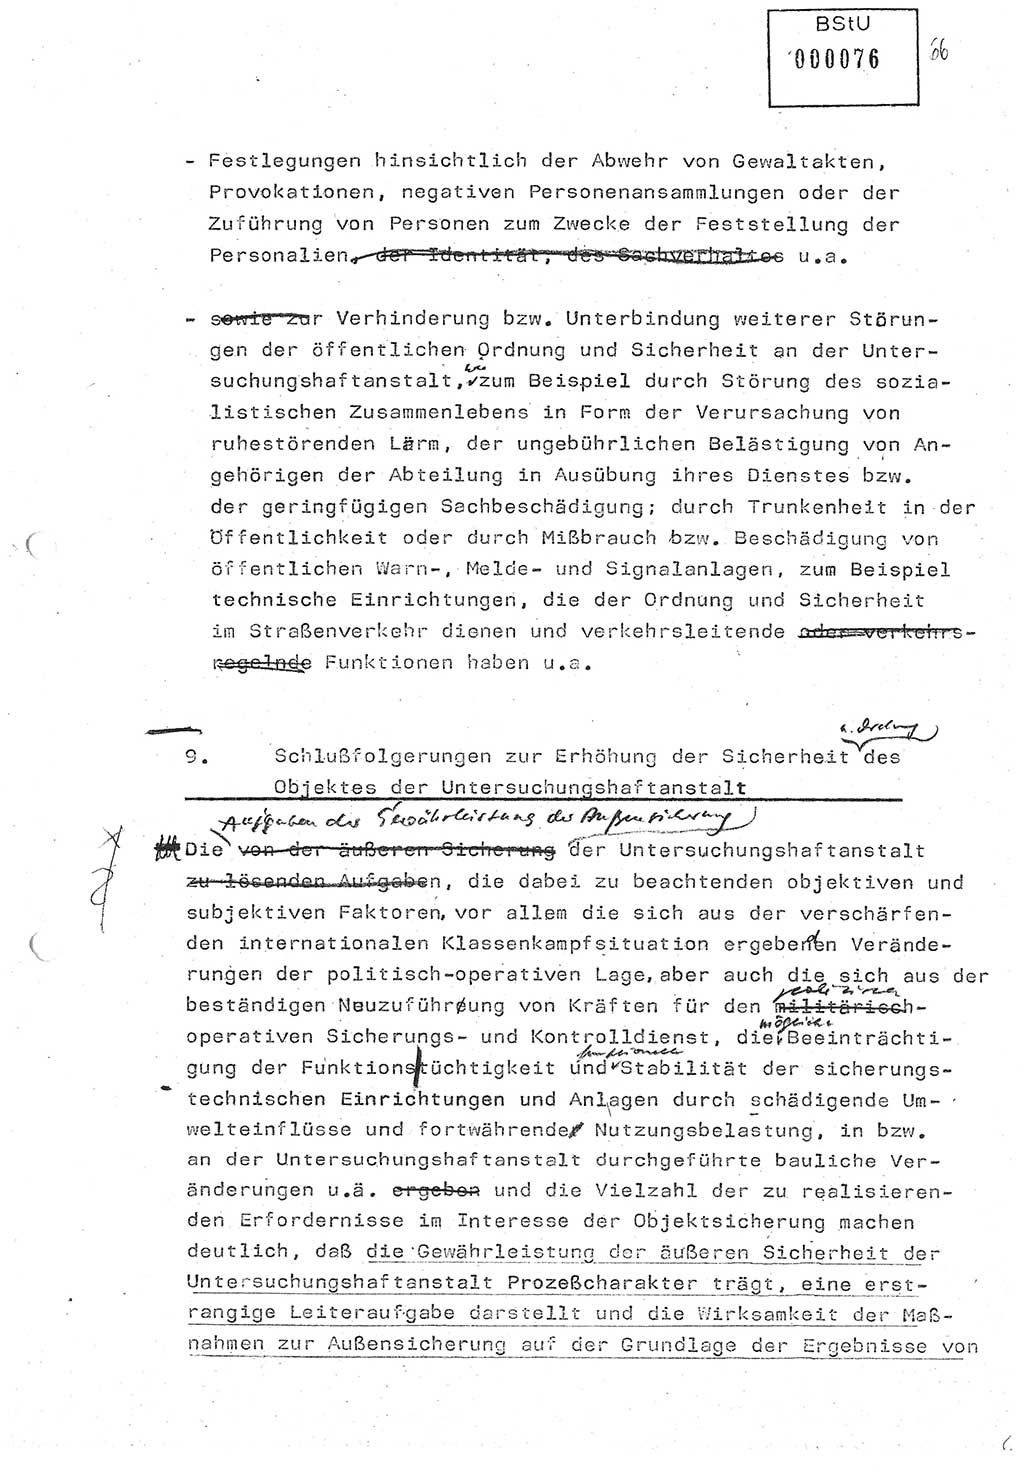 Diplomarbeit (Entwurf) Oberleutnant Peter Parke (Abt. ⅩⅣ), Ministerium für Staatssicherheit (MfS) [Deutsche Demokratische Republik (DDR)], Juristische Hochschule (JHS), Geheime Verschlußsache (GVS) o001-98/86, Potsdam 1986, Seite 76 (Dipl.-Arb. MfS DDR JHS GVS o001-98/86 1986, S. 76)